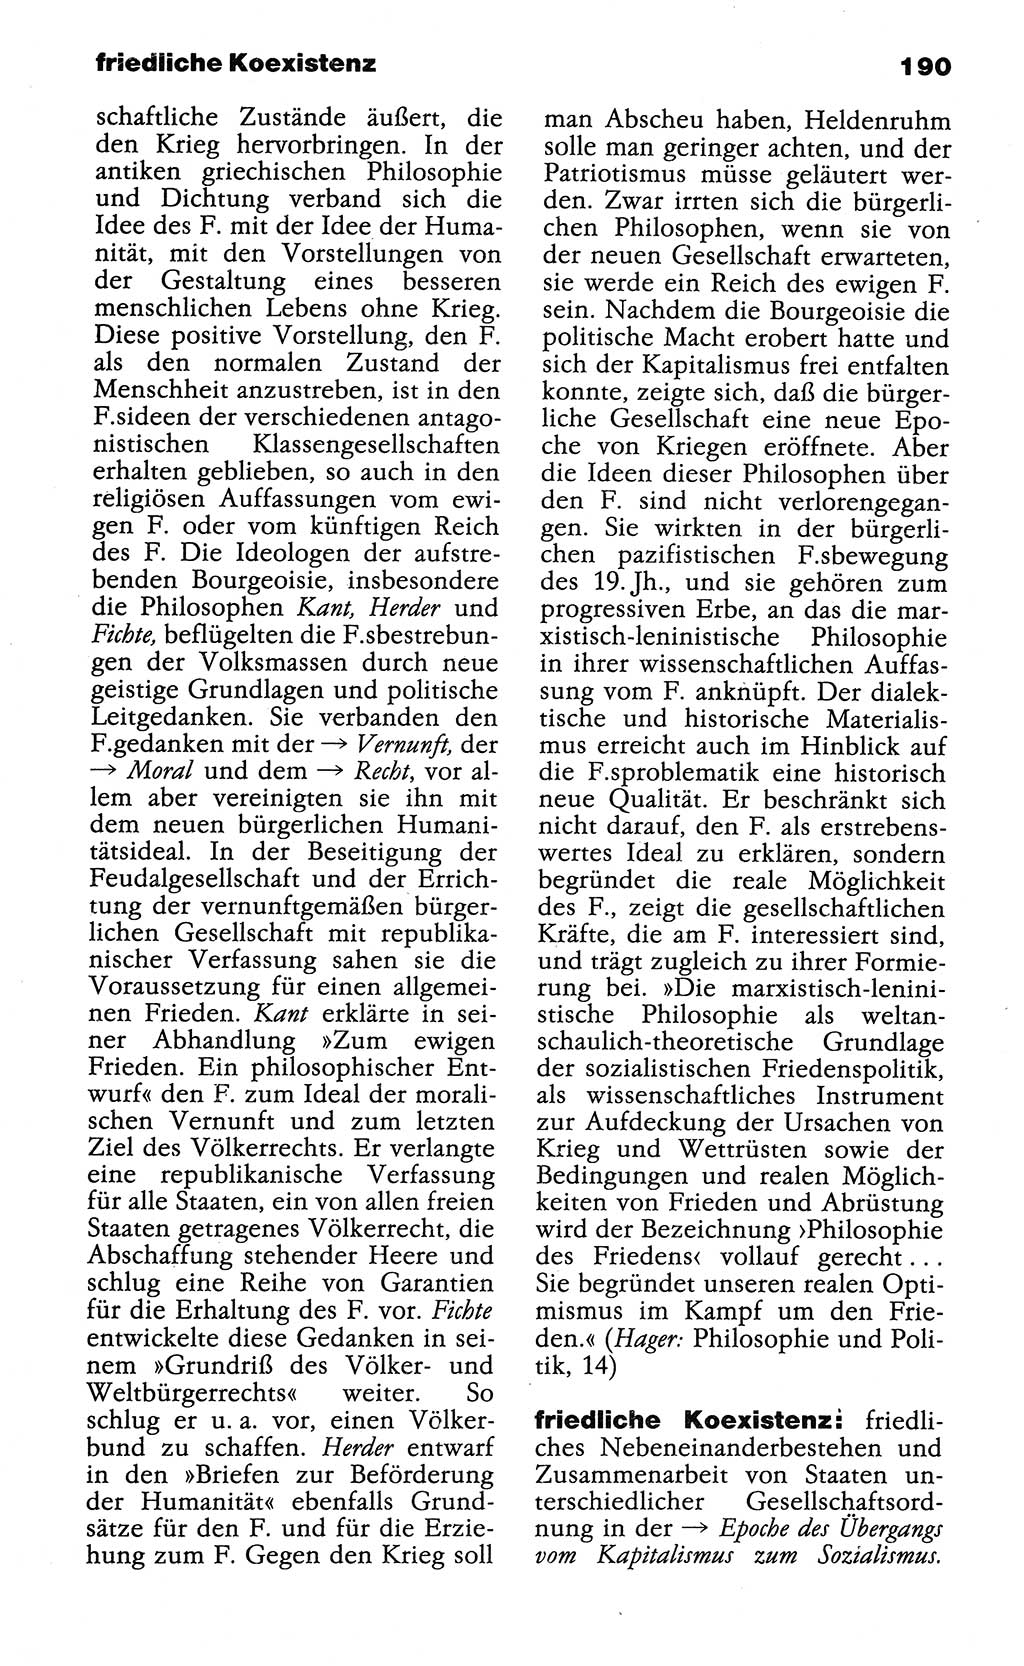 Wörterbuch der marxistisch-leninistischen Philosophie [Deutsche Demokratische Republik (DDR)] 1985, Seite 190 (Wb. ML Phil. DDR 1985, S. 190)